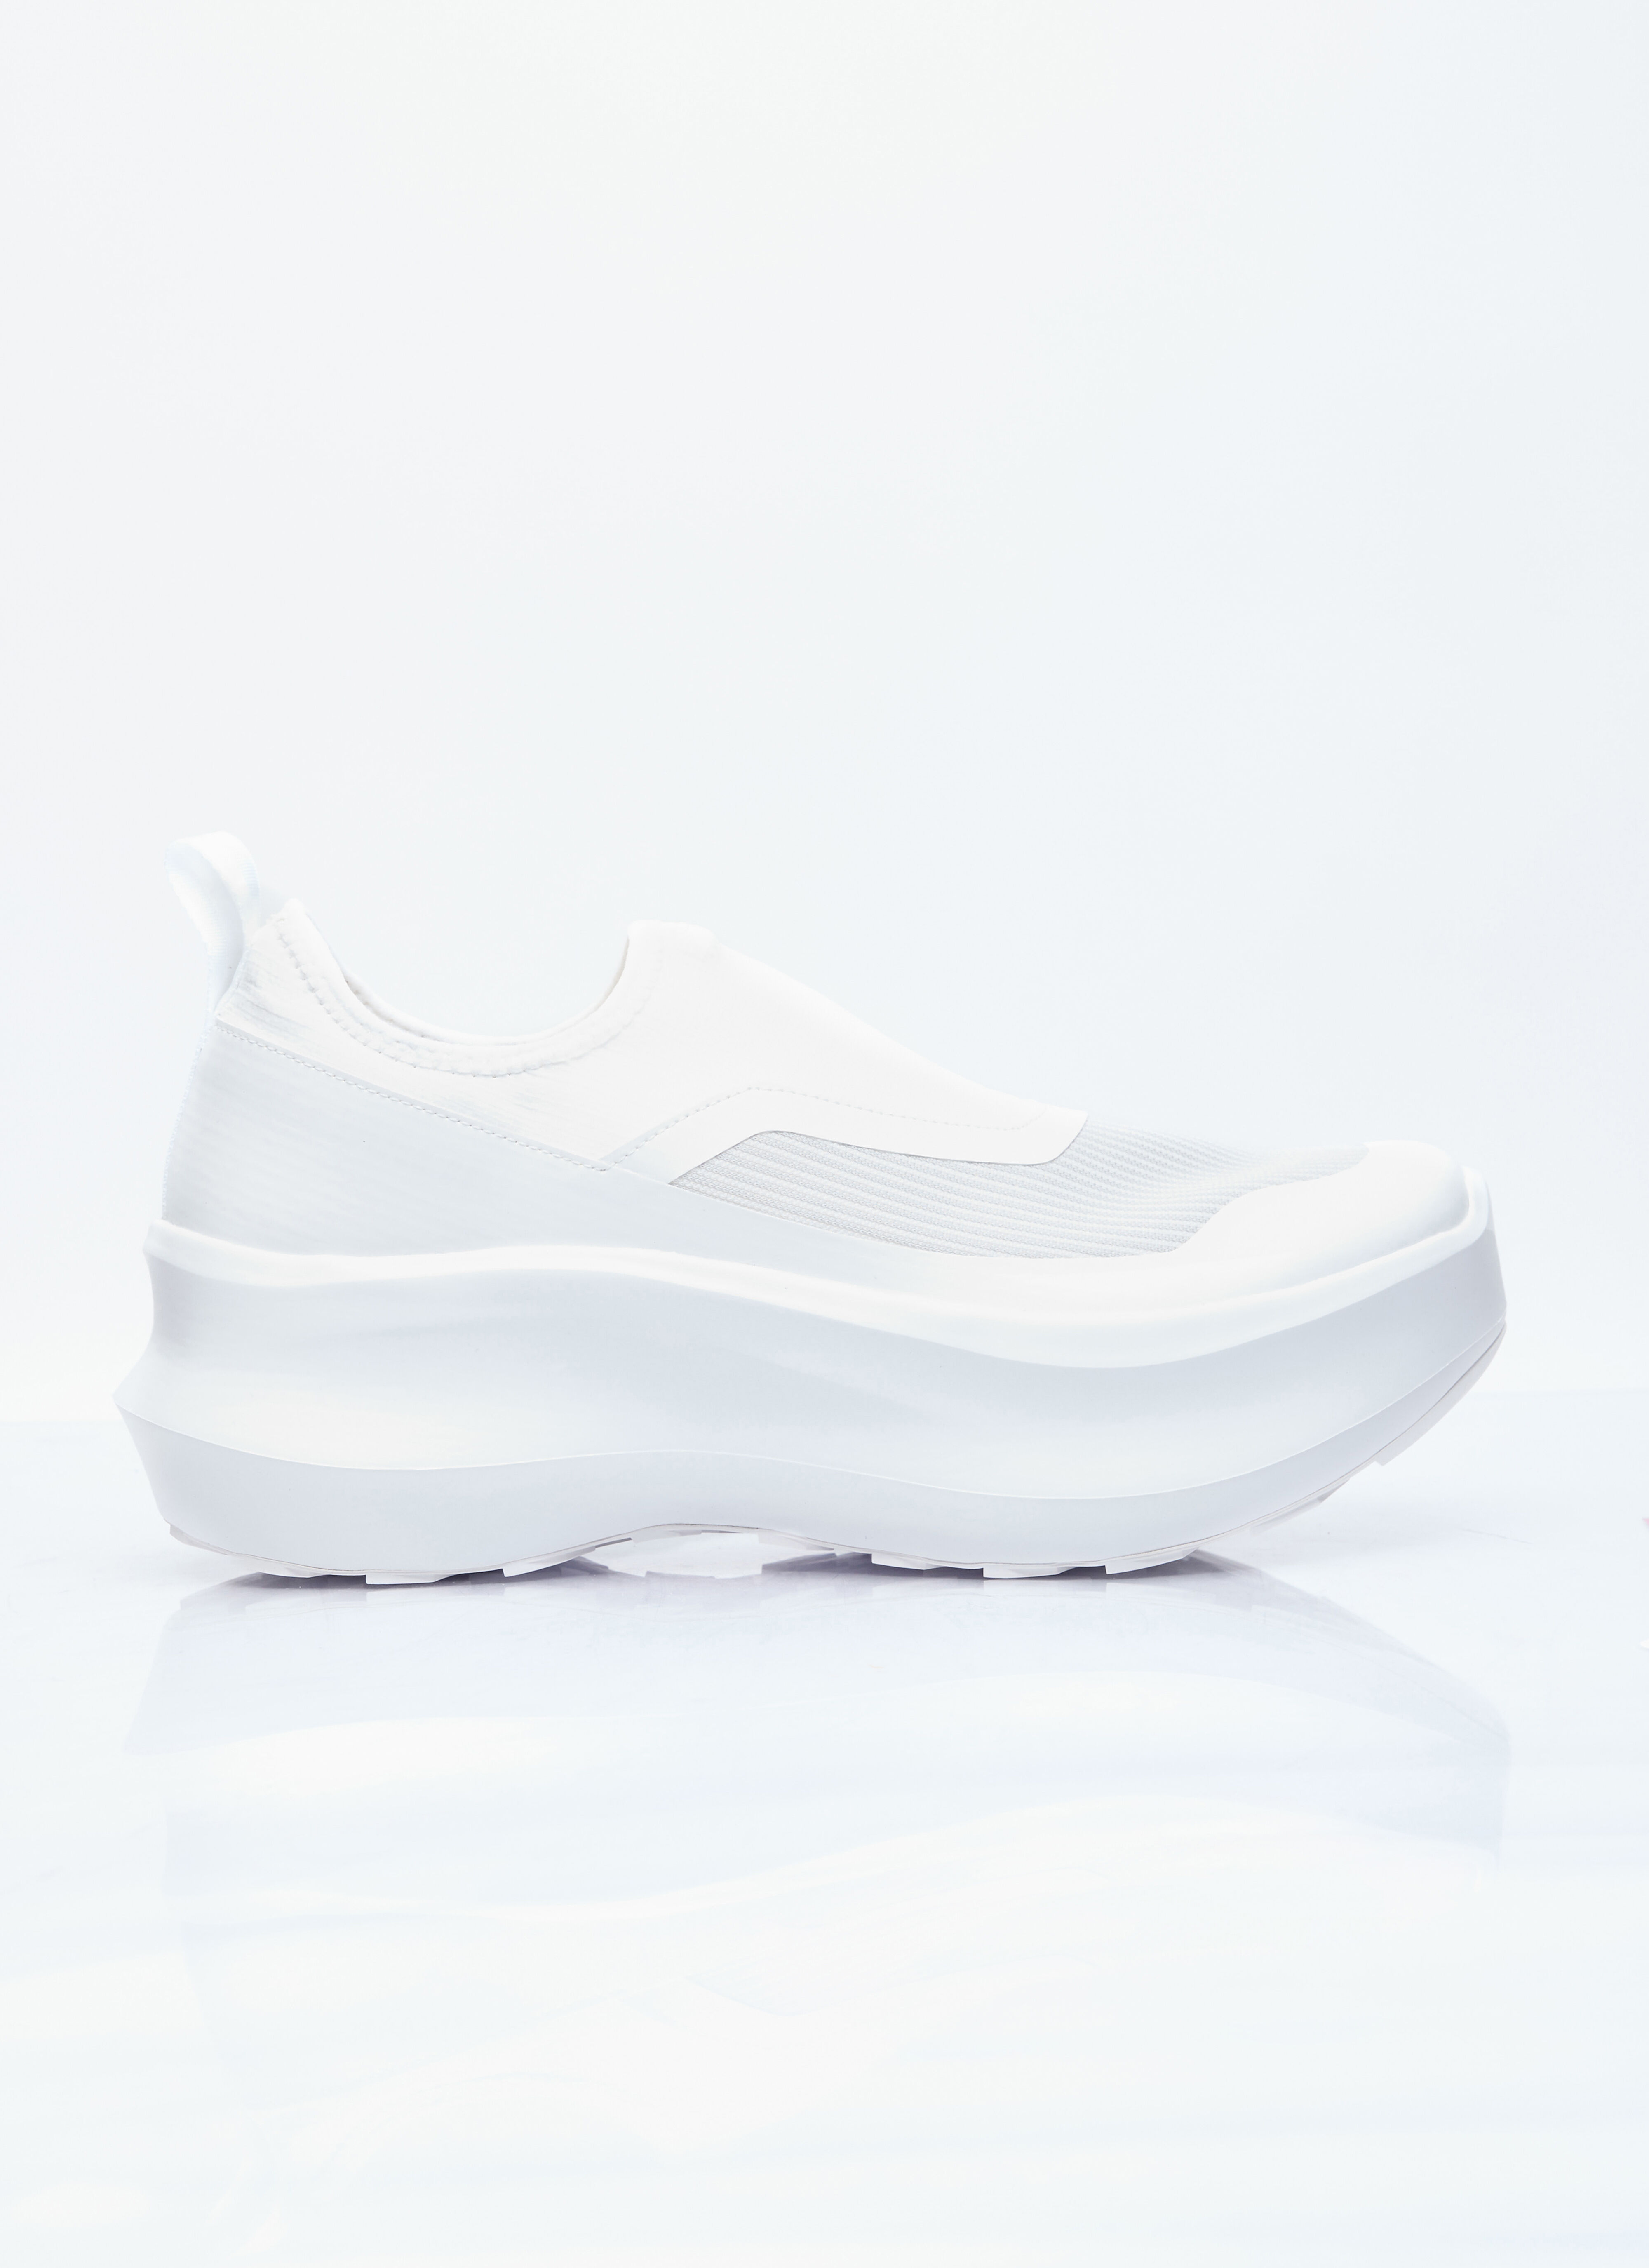 Comme Des Garçons x Salomon Slip-On Platform Sneakers White cds0354002